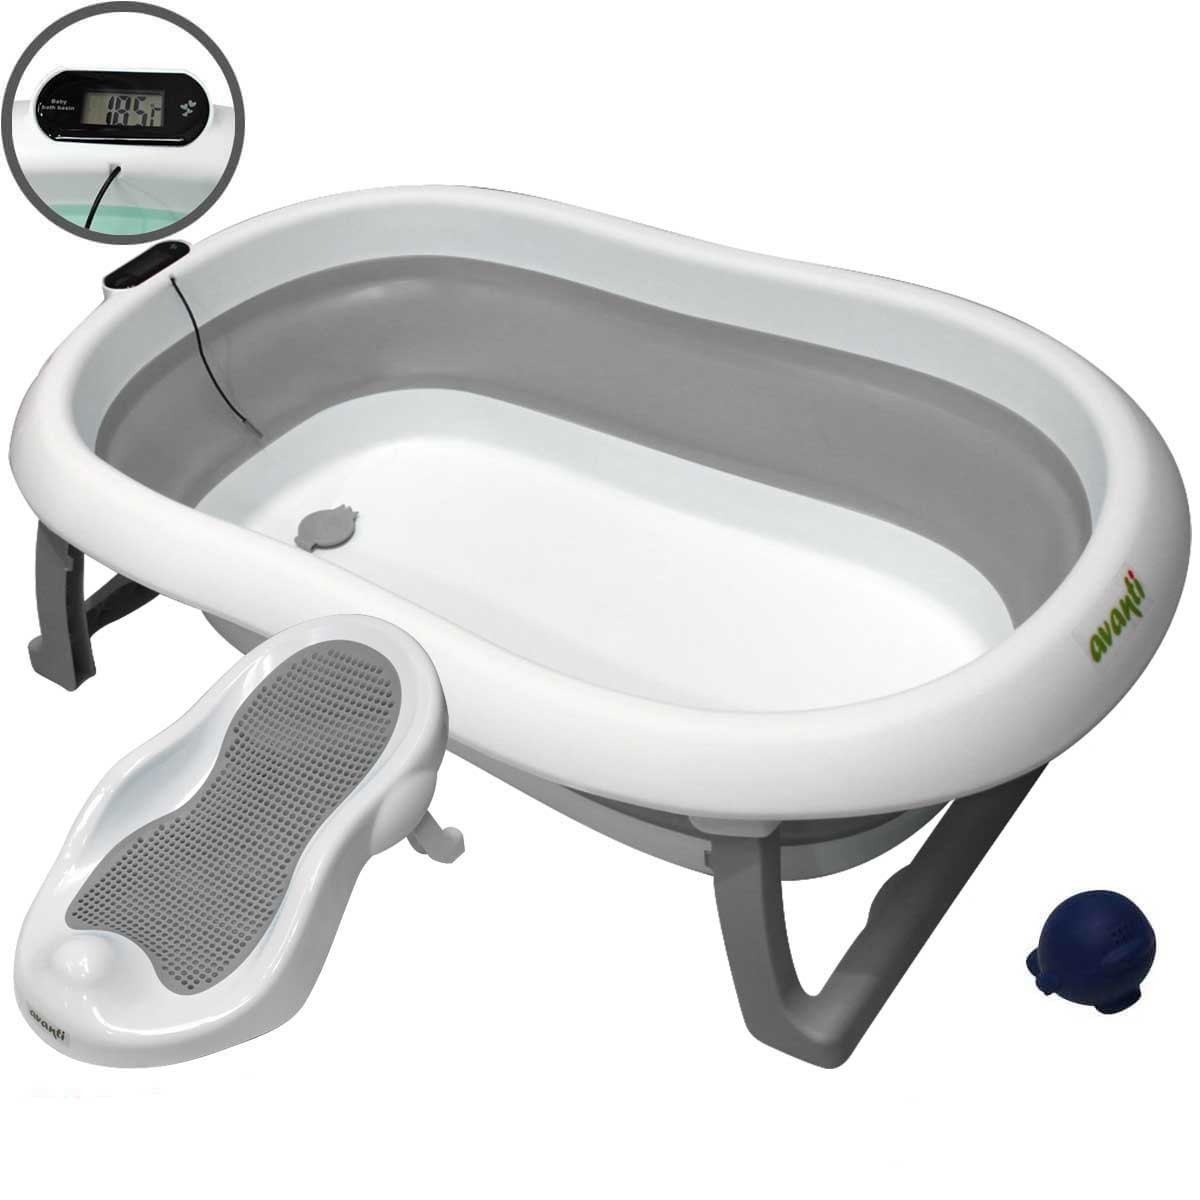 Bañera para bebés plegable y compacta con diseño atractivo La bañer